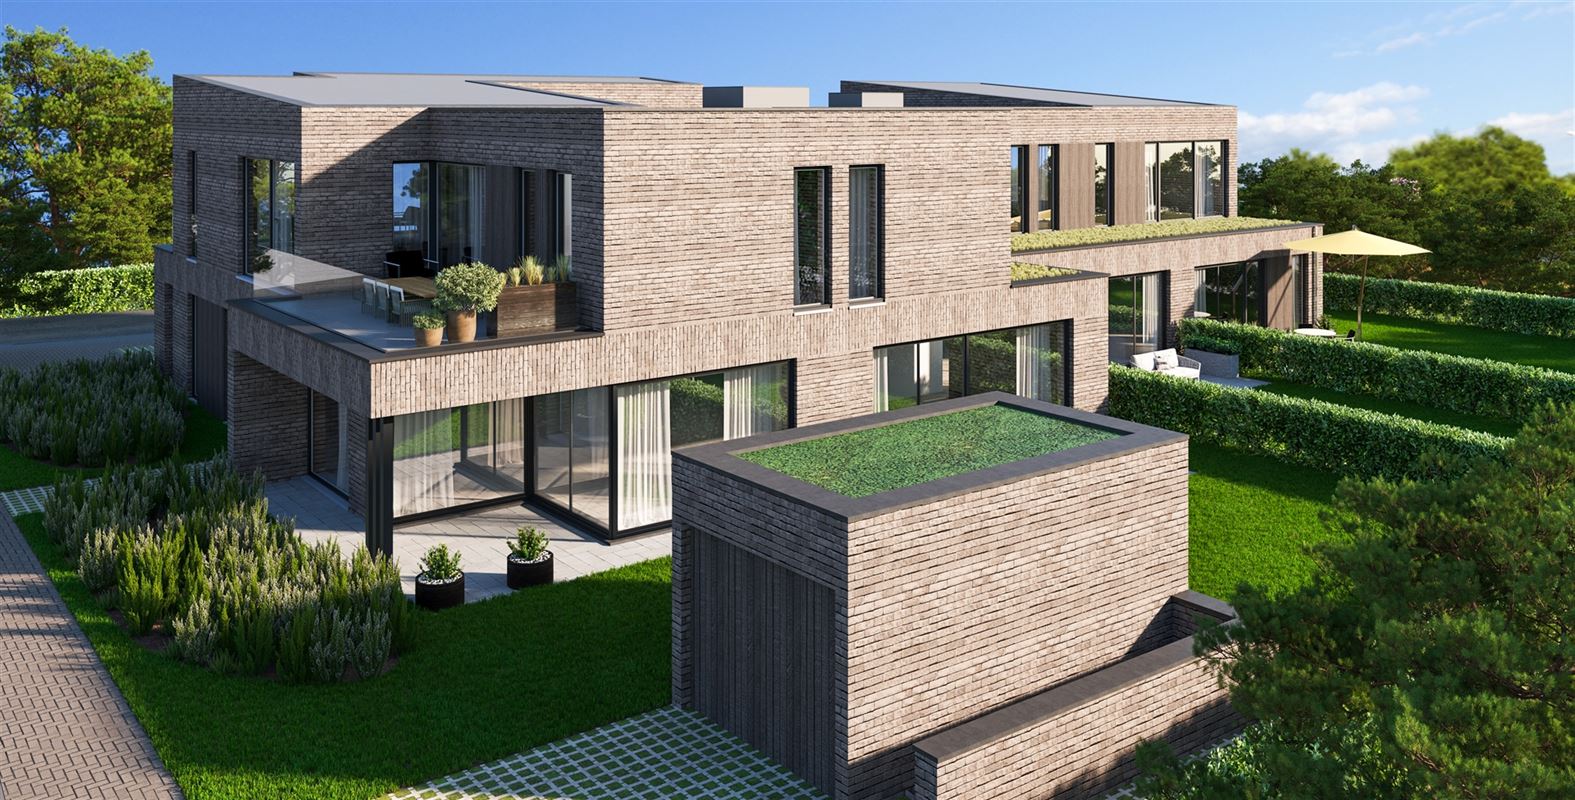 Foto 5 : Appartement met tuin te 3053 Haasrode (België) - Prijs € 418.000